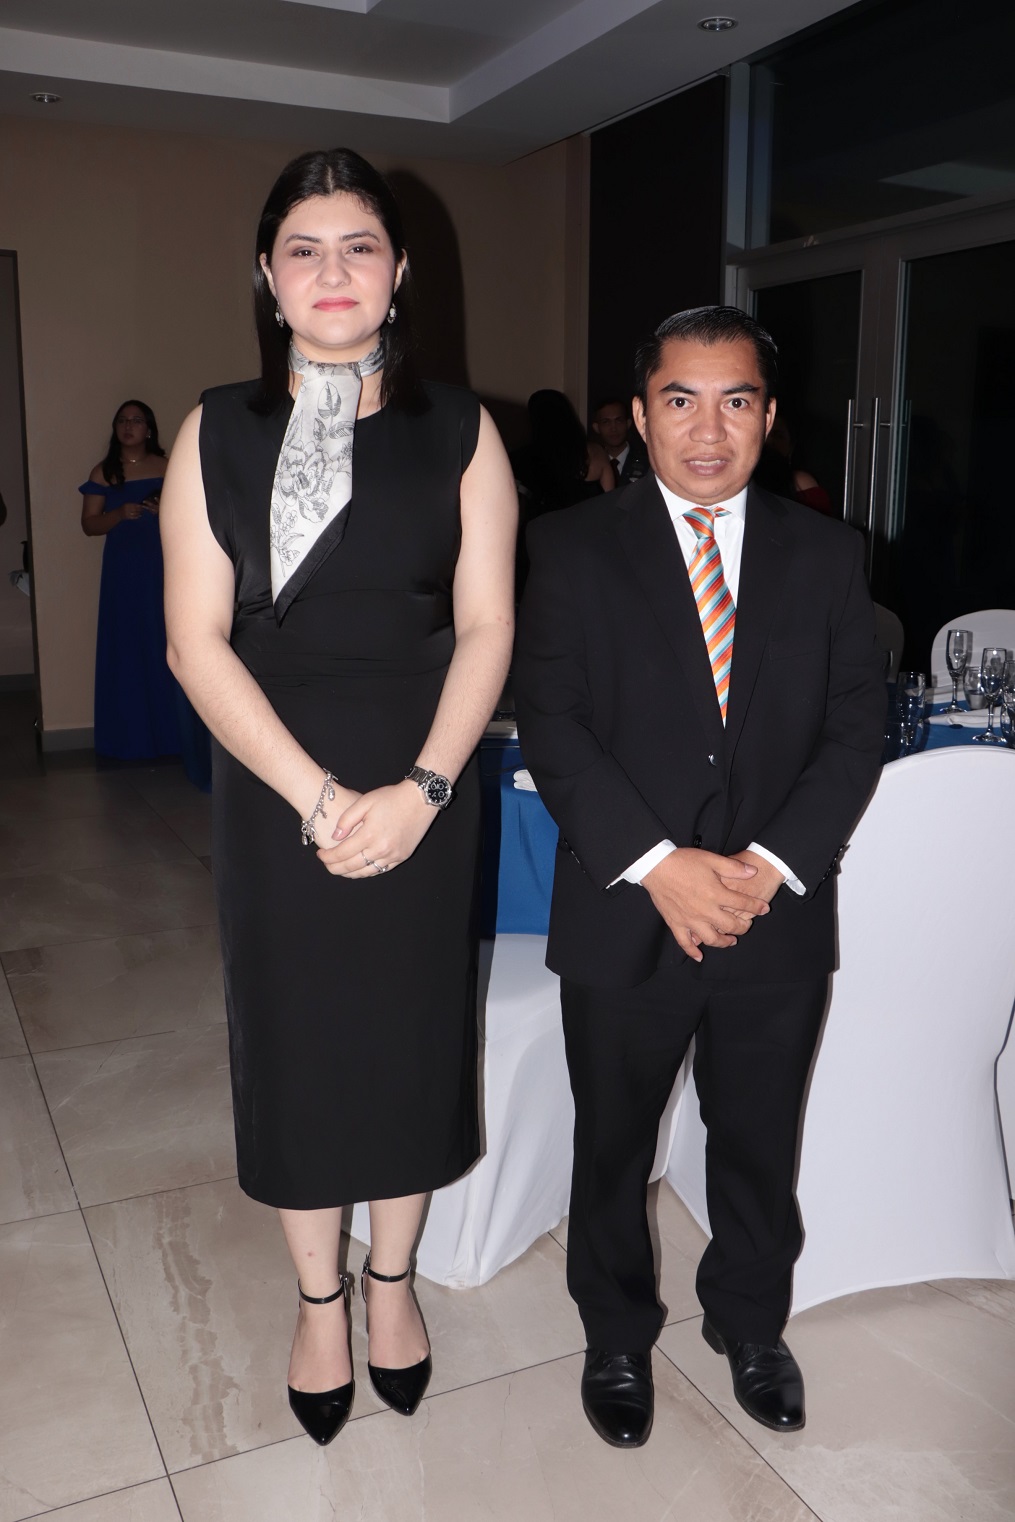 JCI Cámara Junior San Pedro Sula juramenta nueva junta directiva